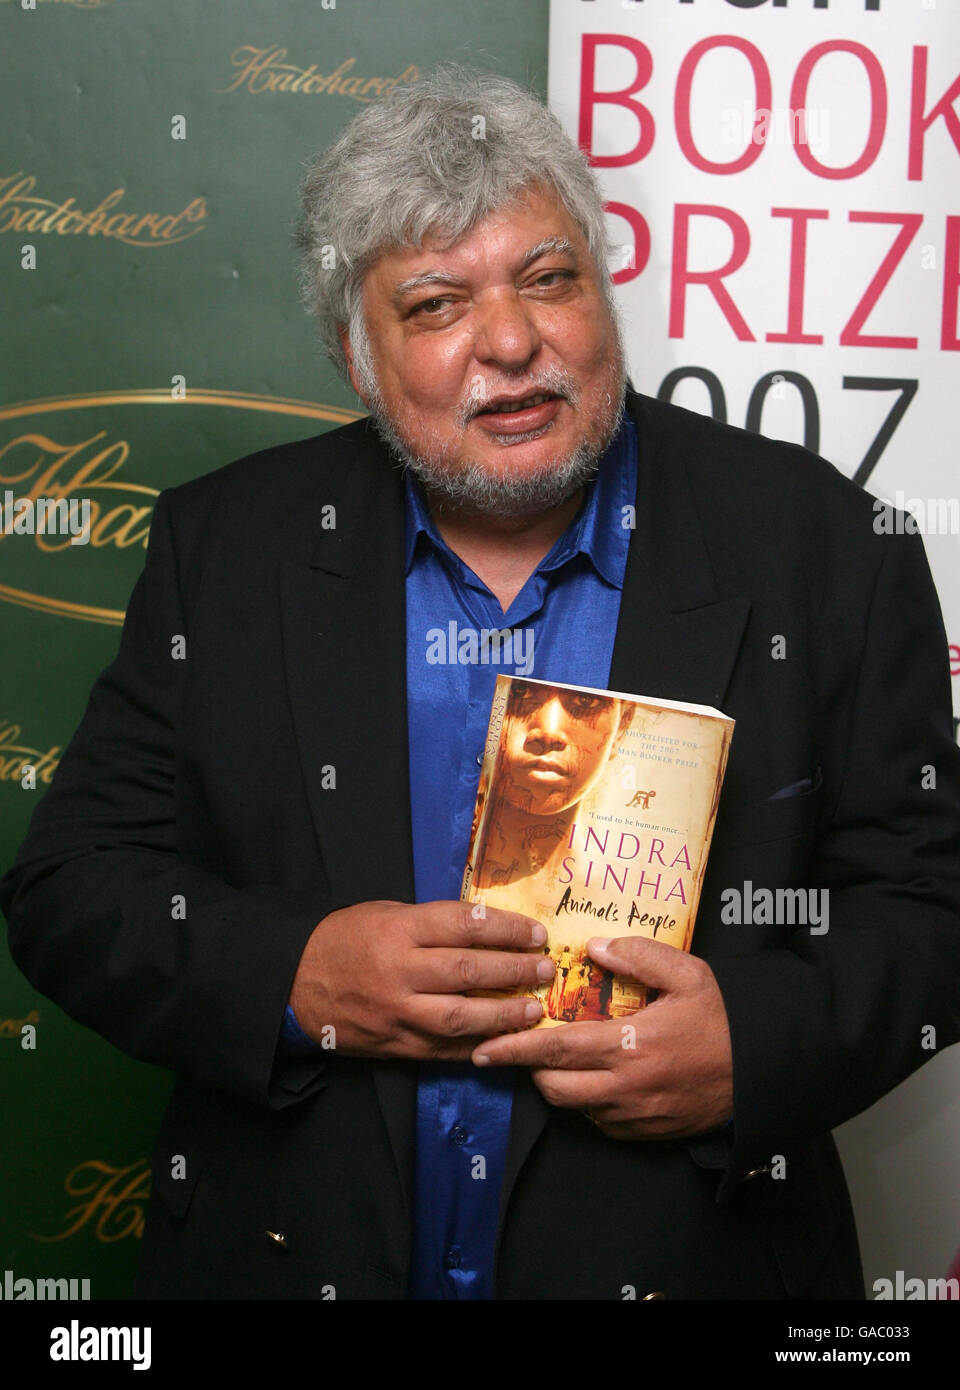 Indra Sinha, un candidat sélectionné pour le Prix Man Booker 2007 avec son livre 'Animal's People', dans la librairie Hatchard de Londres. Banque D'Images